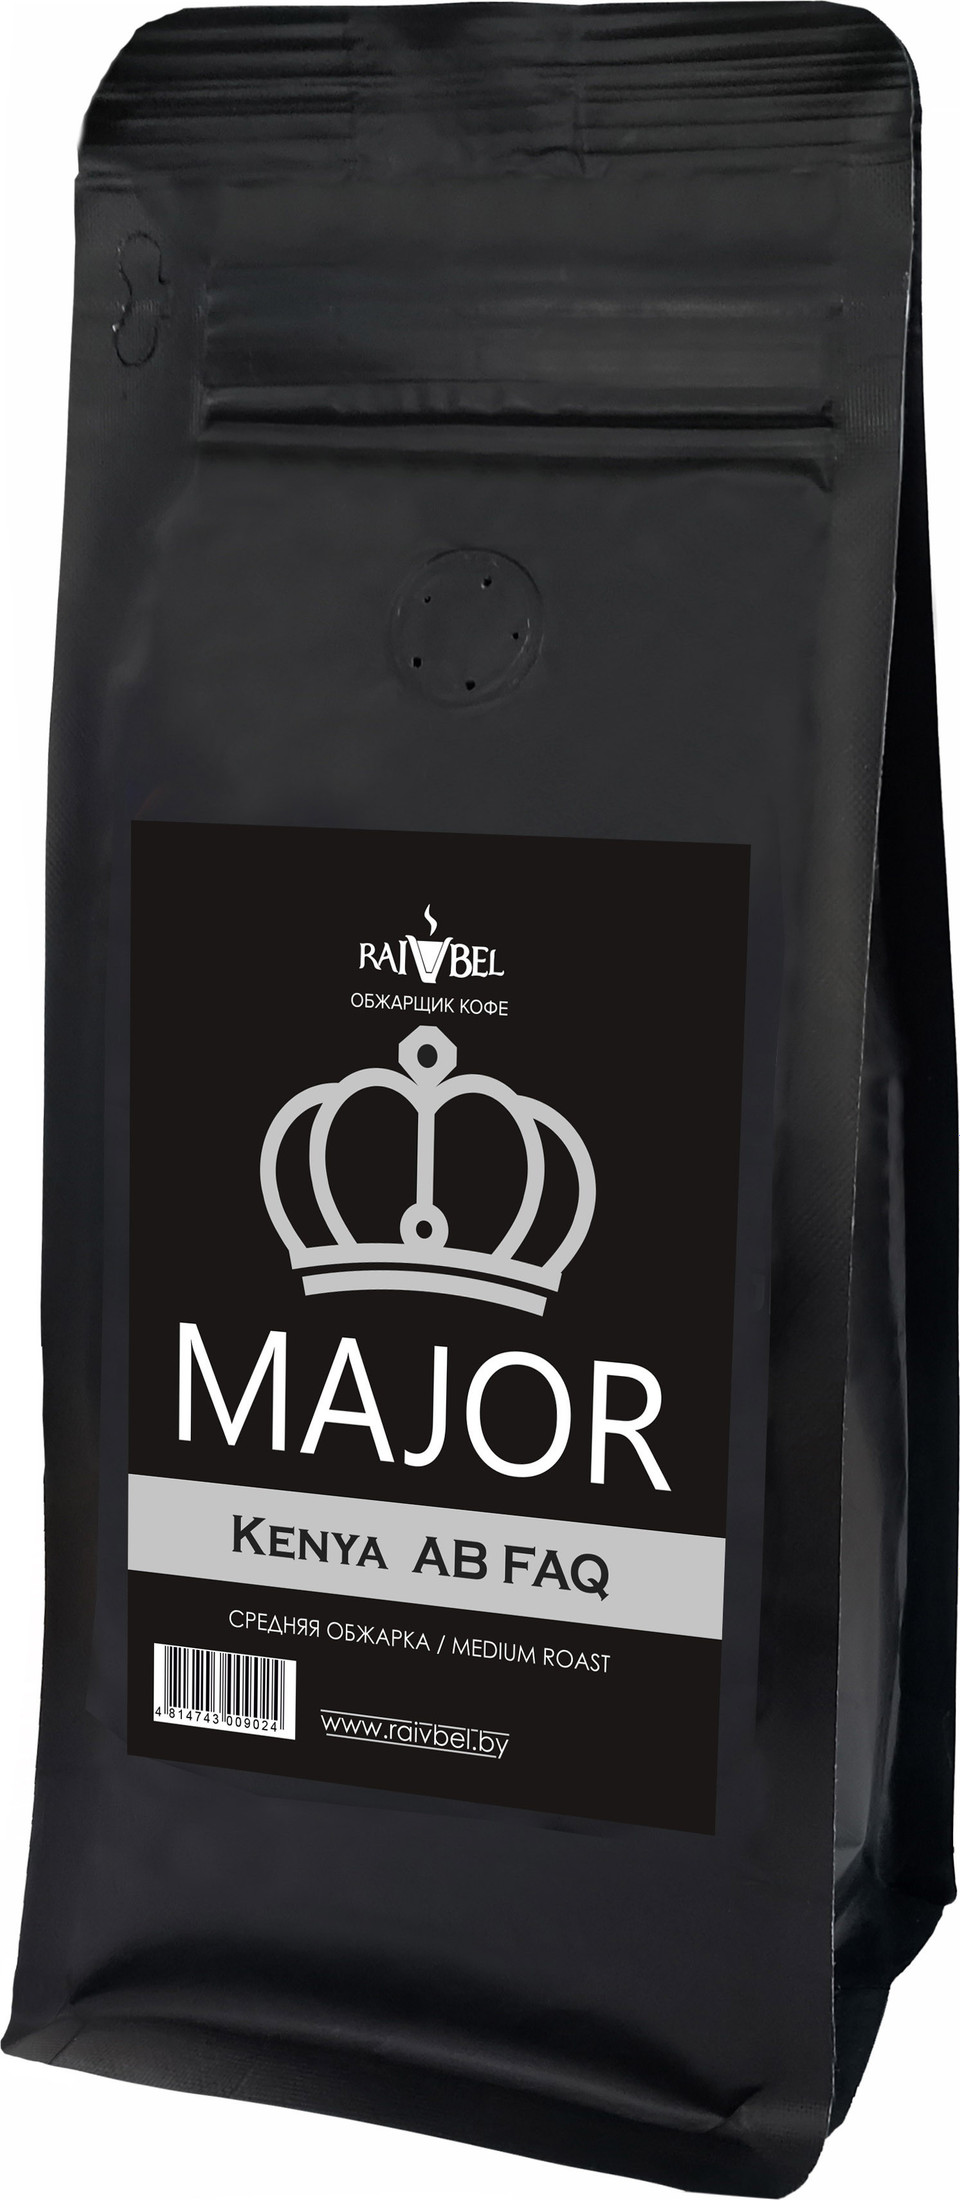 

Кофе Major Kenya Arabica AB FAQ зерновой 250 г